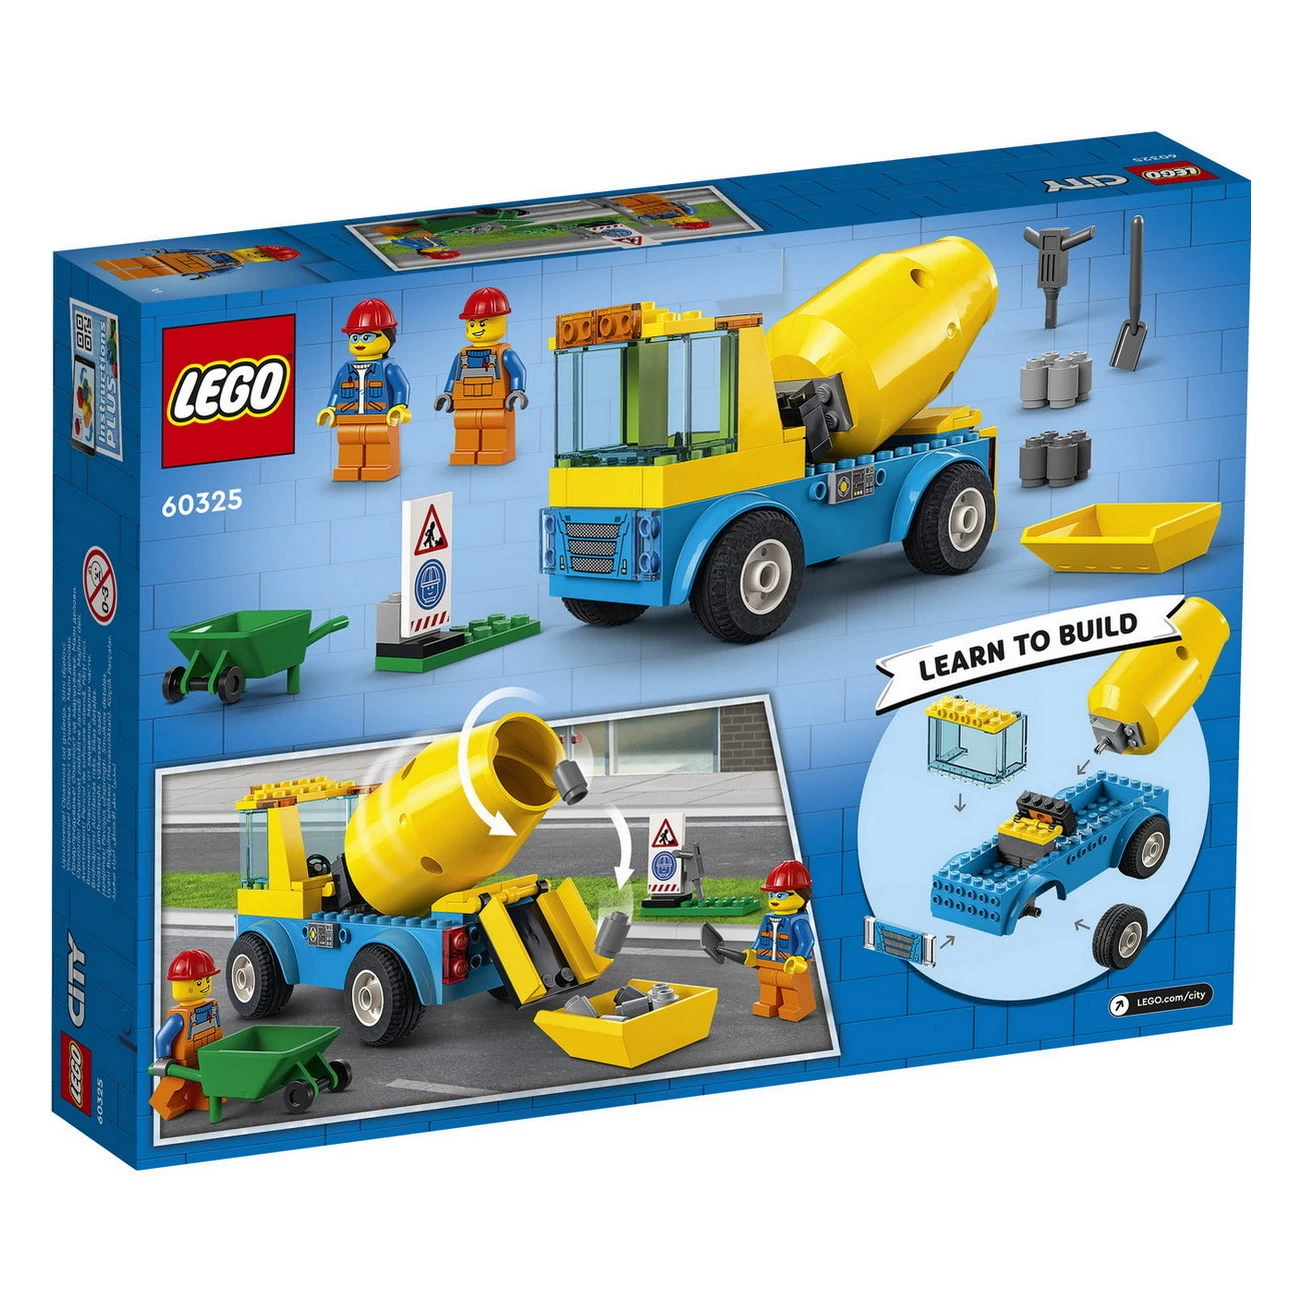 LEGO City 60325 - Betonmischer